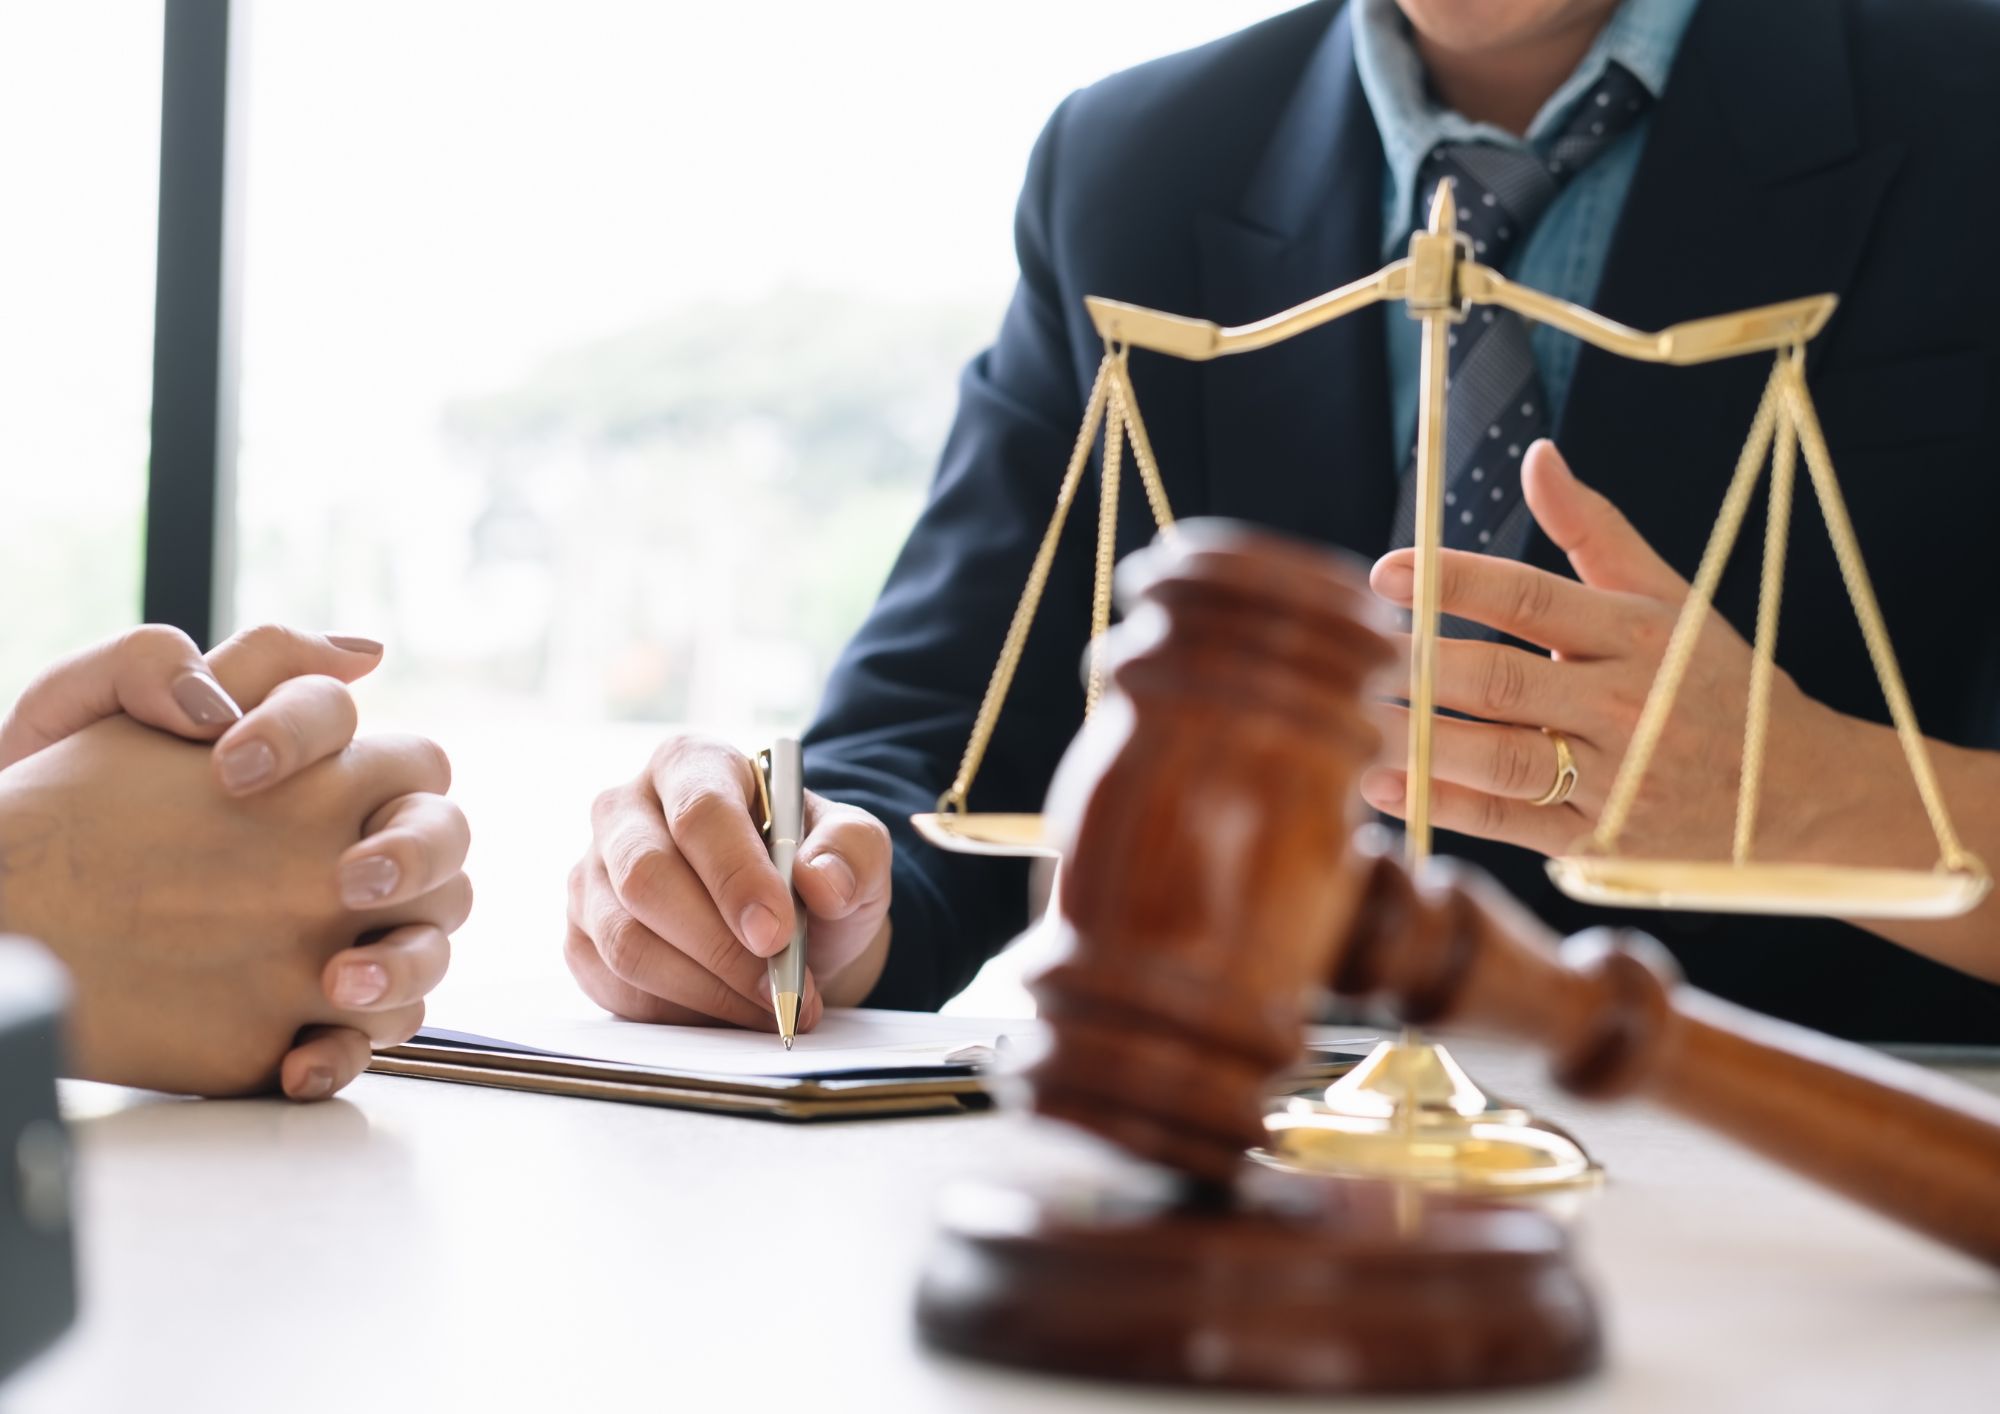 איך בוחרים עורך דין לייצוג דיירים בהליכי פינוי בינוי?